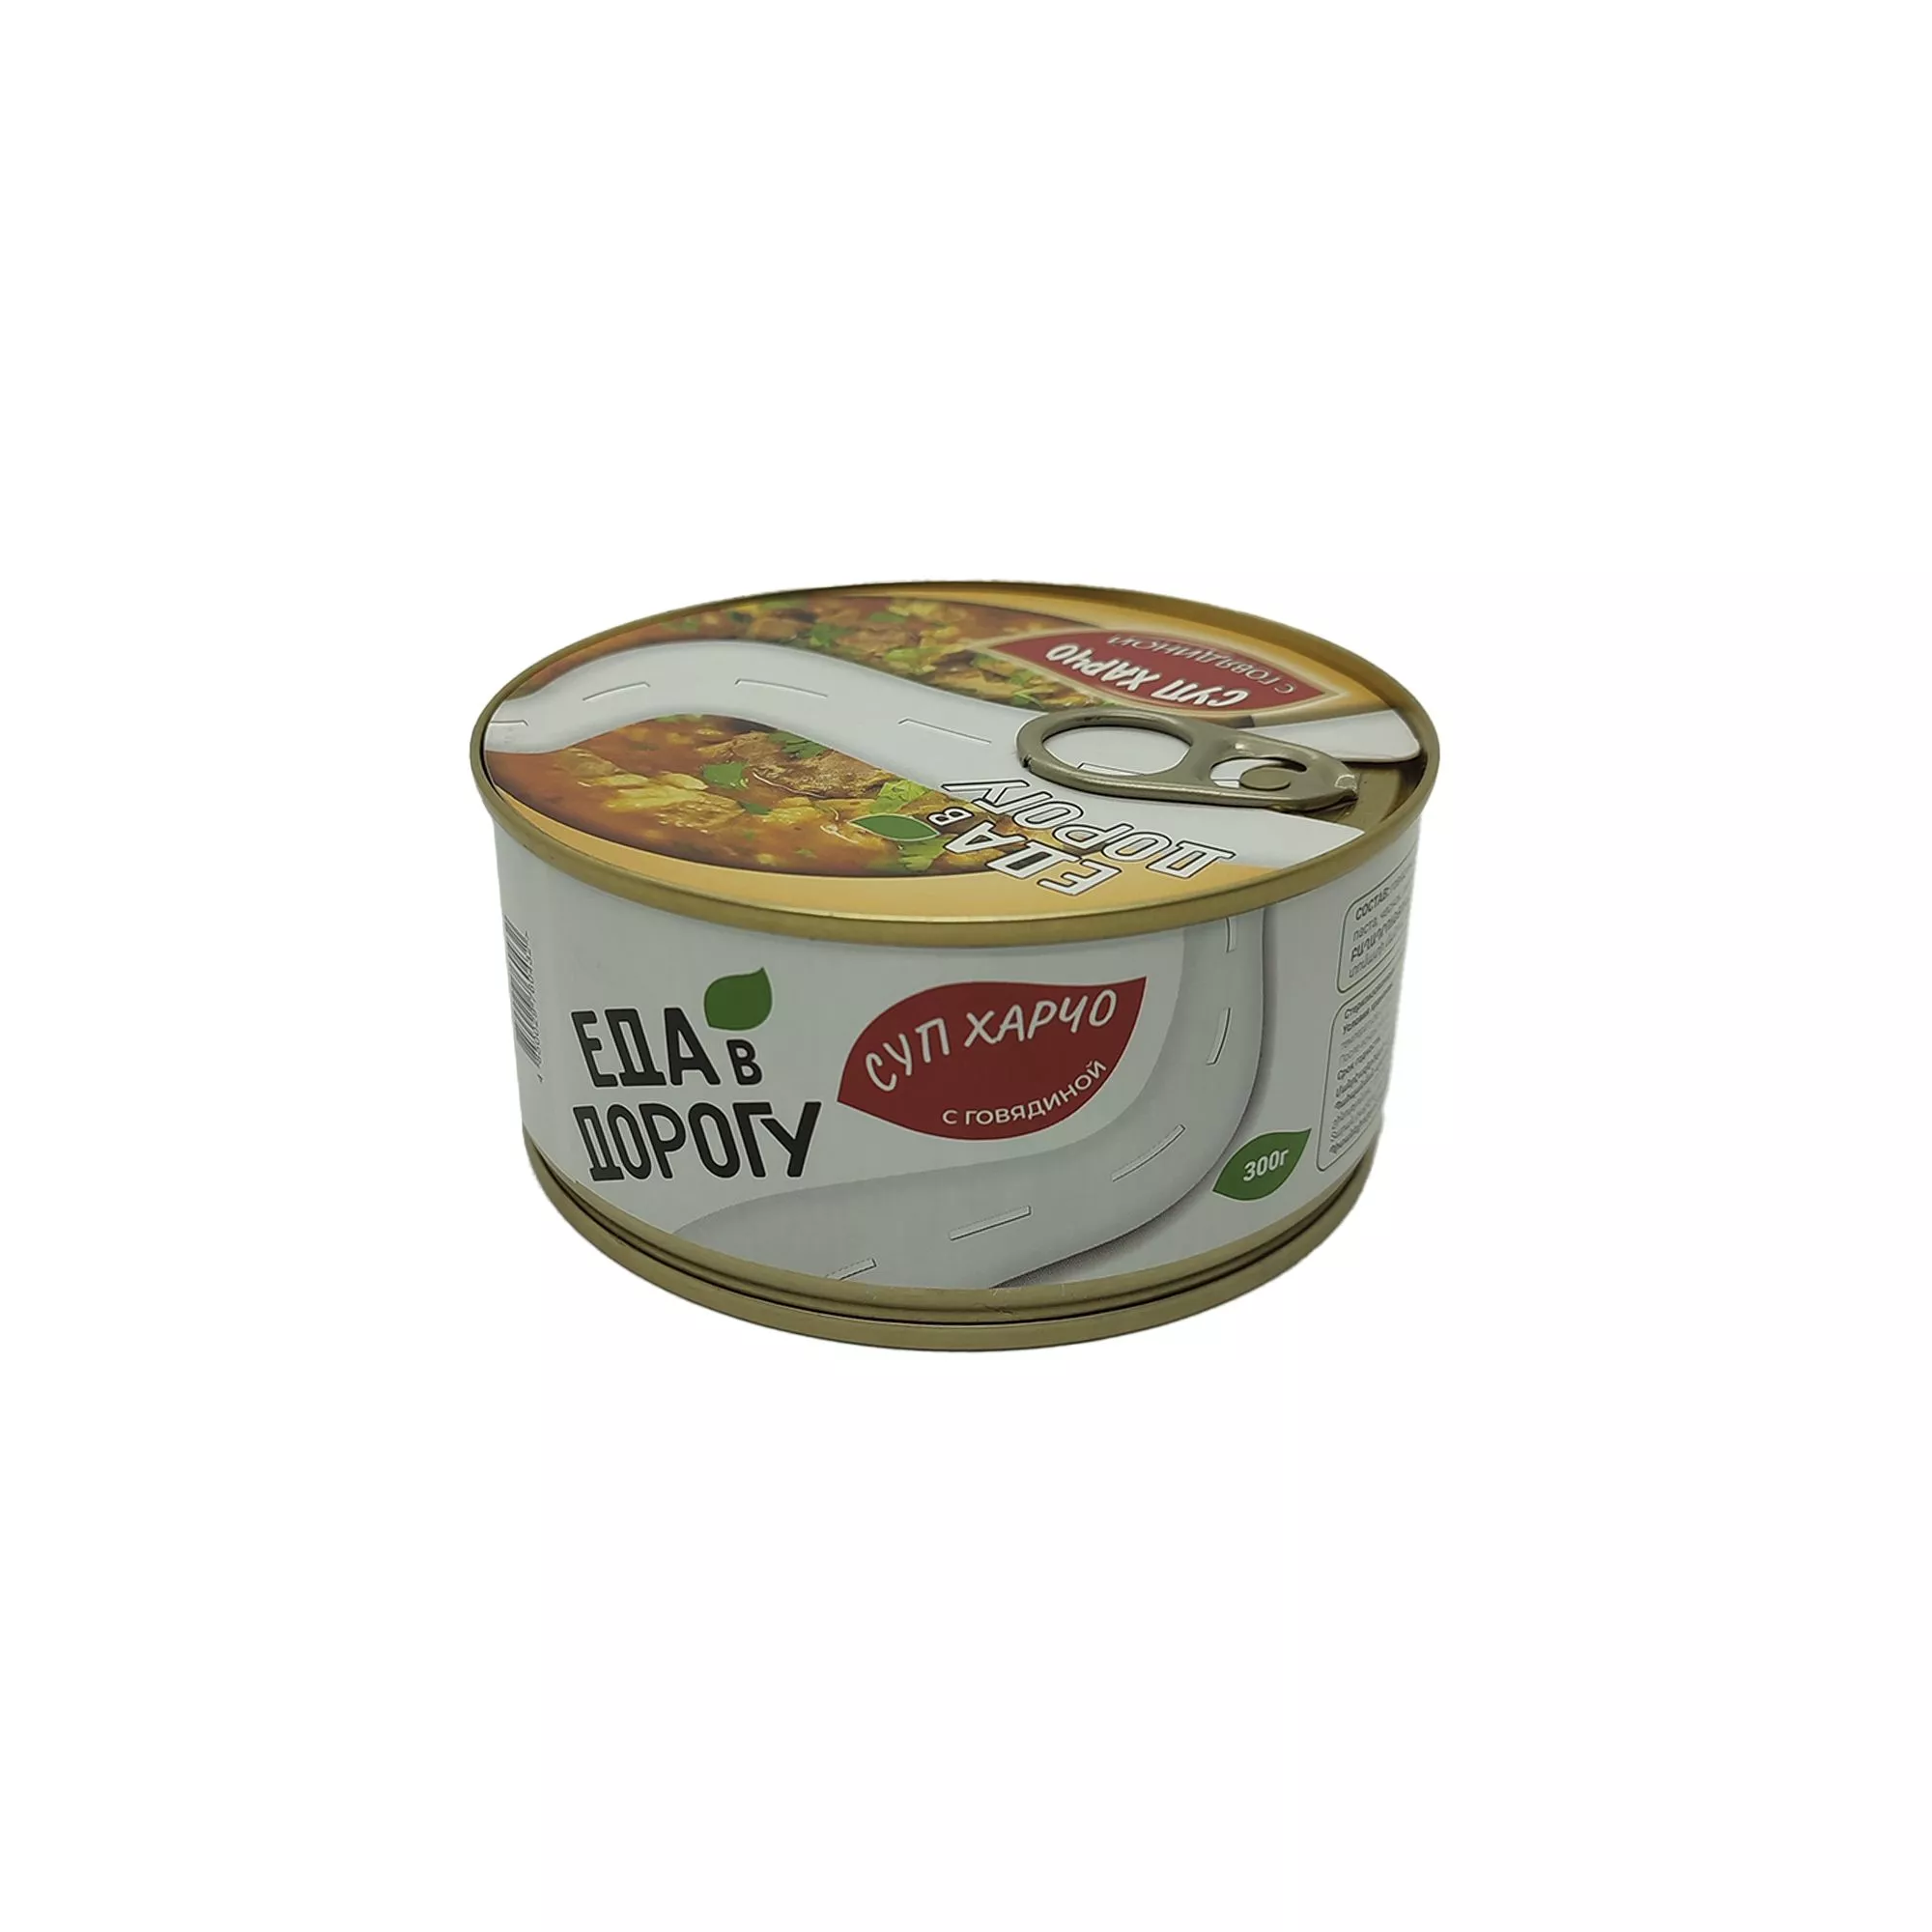 Суп харчо с говядиной "Еда в дорогу" 300гр. с доставкой по России и в Казахстан | Bready